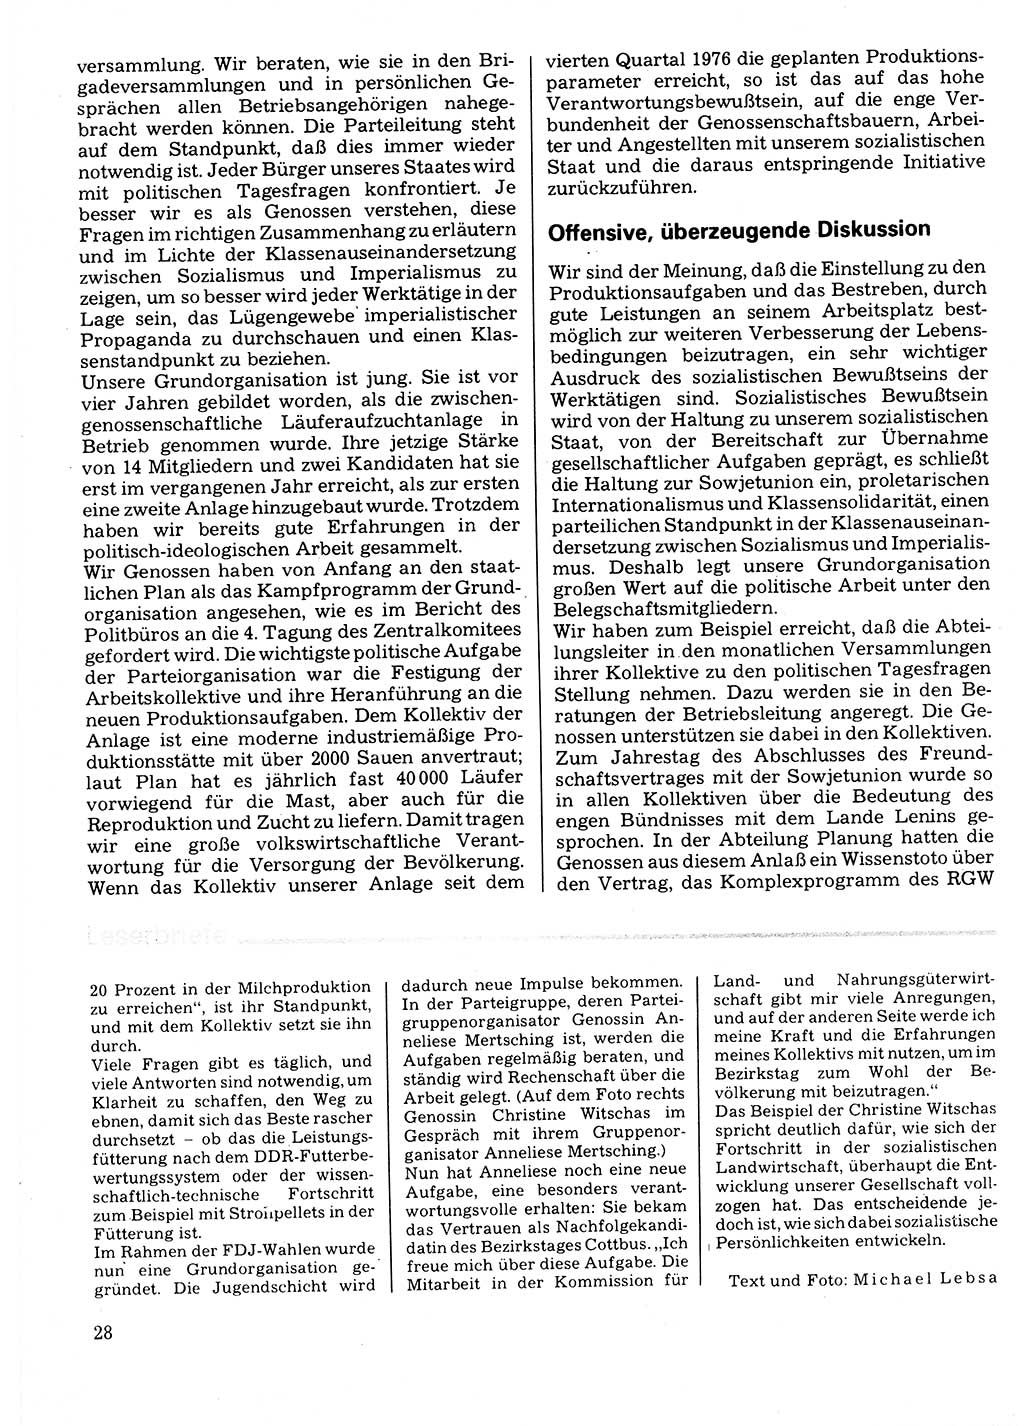 Neuer Weg (NW), Organ des Zentralkomitees (ZK) der SED (Sozialistische Einheitspartei Deutschlands) für Fragen des Parteilebens, 32. Jahrgang [Deutsche Demokratische Republik (DDR)] 1977, Seite 28 (NW ZK SED DDR 1977, S. 28)